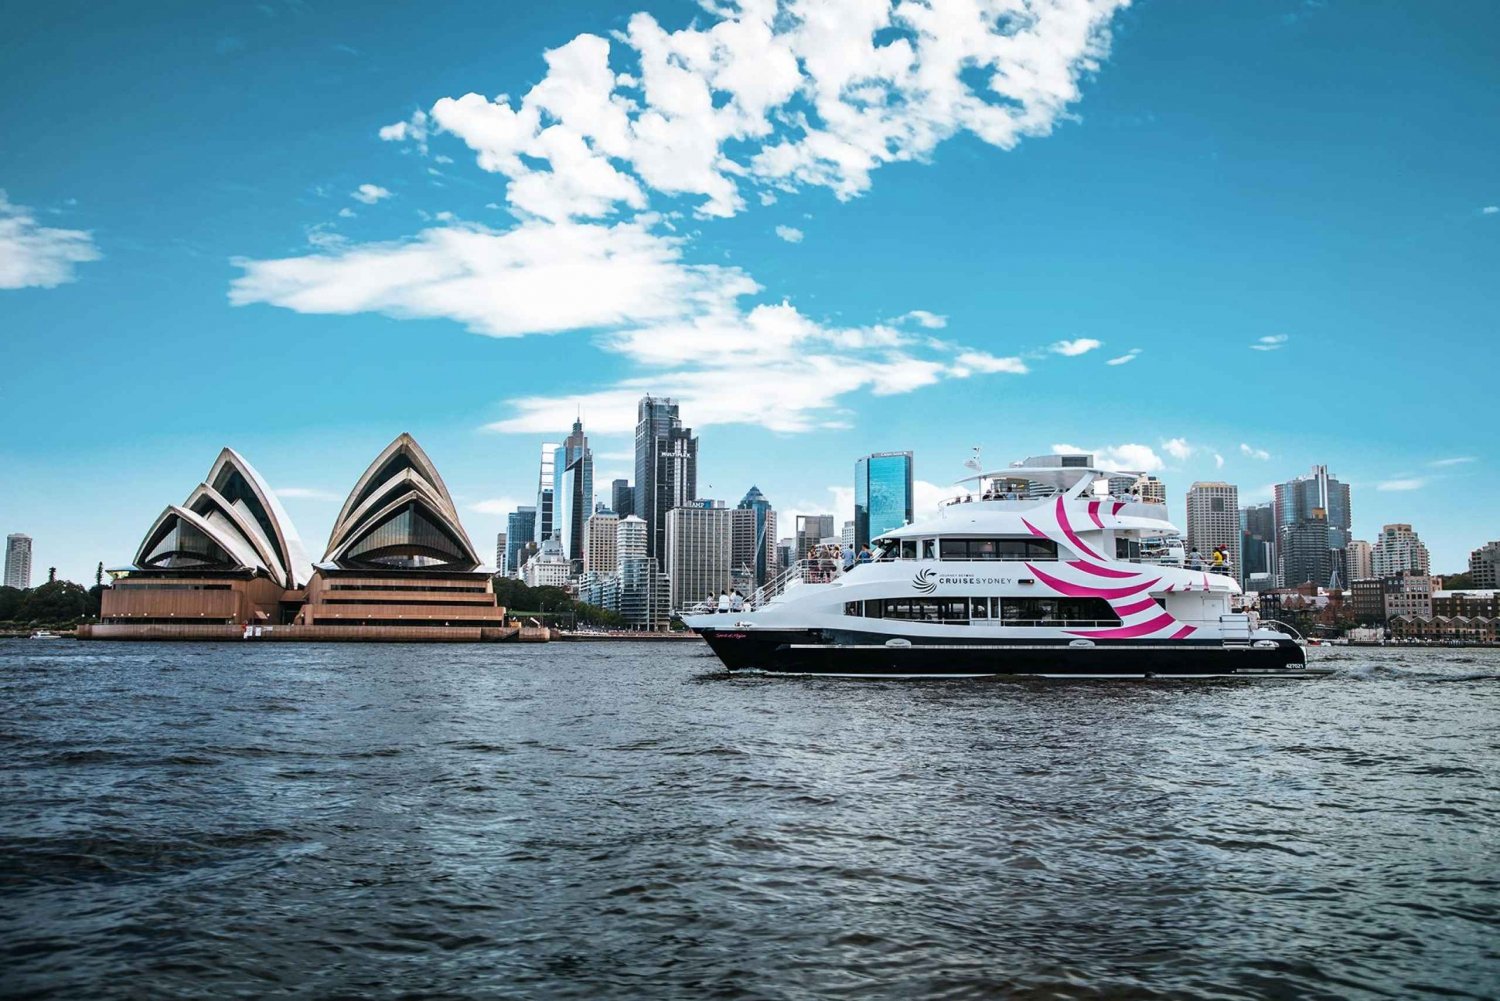 Sydney: crociera nel porto con pranzo premium di 2 portate